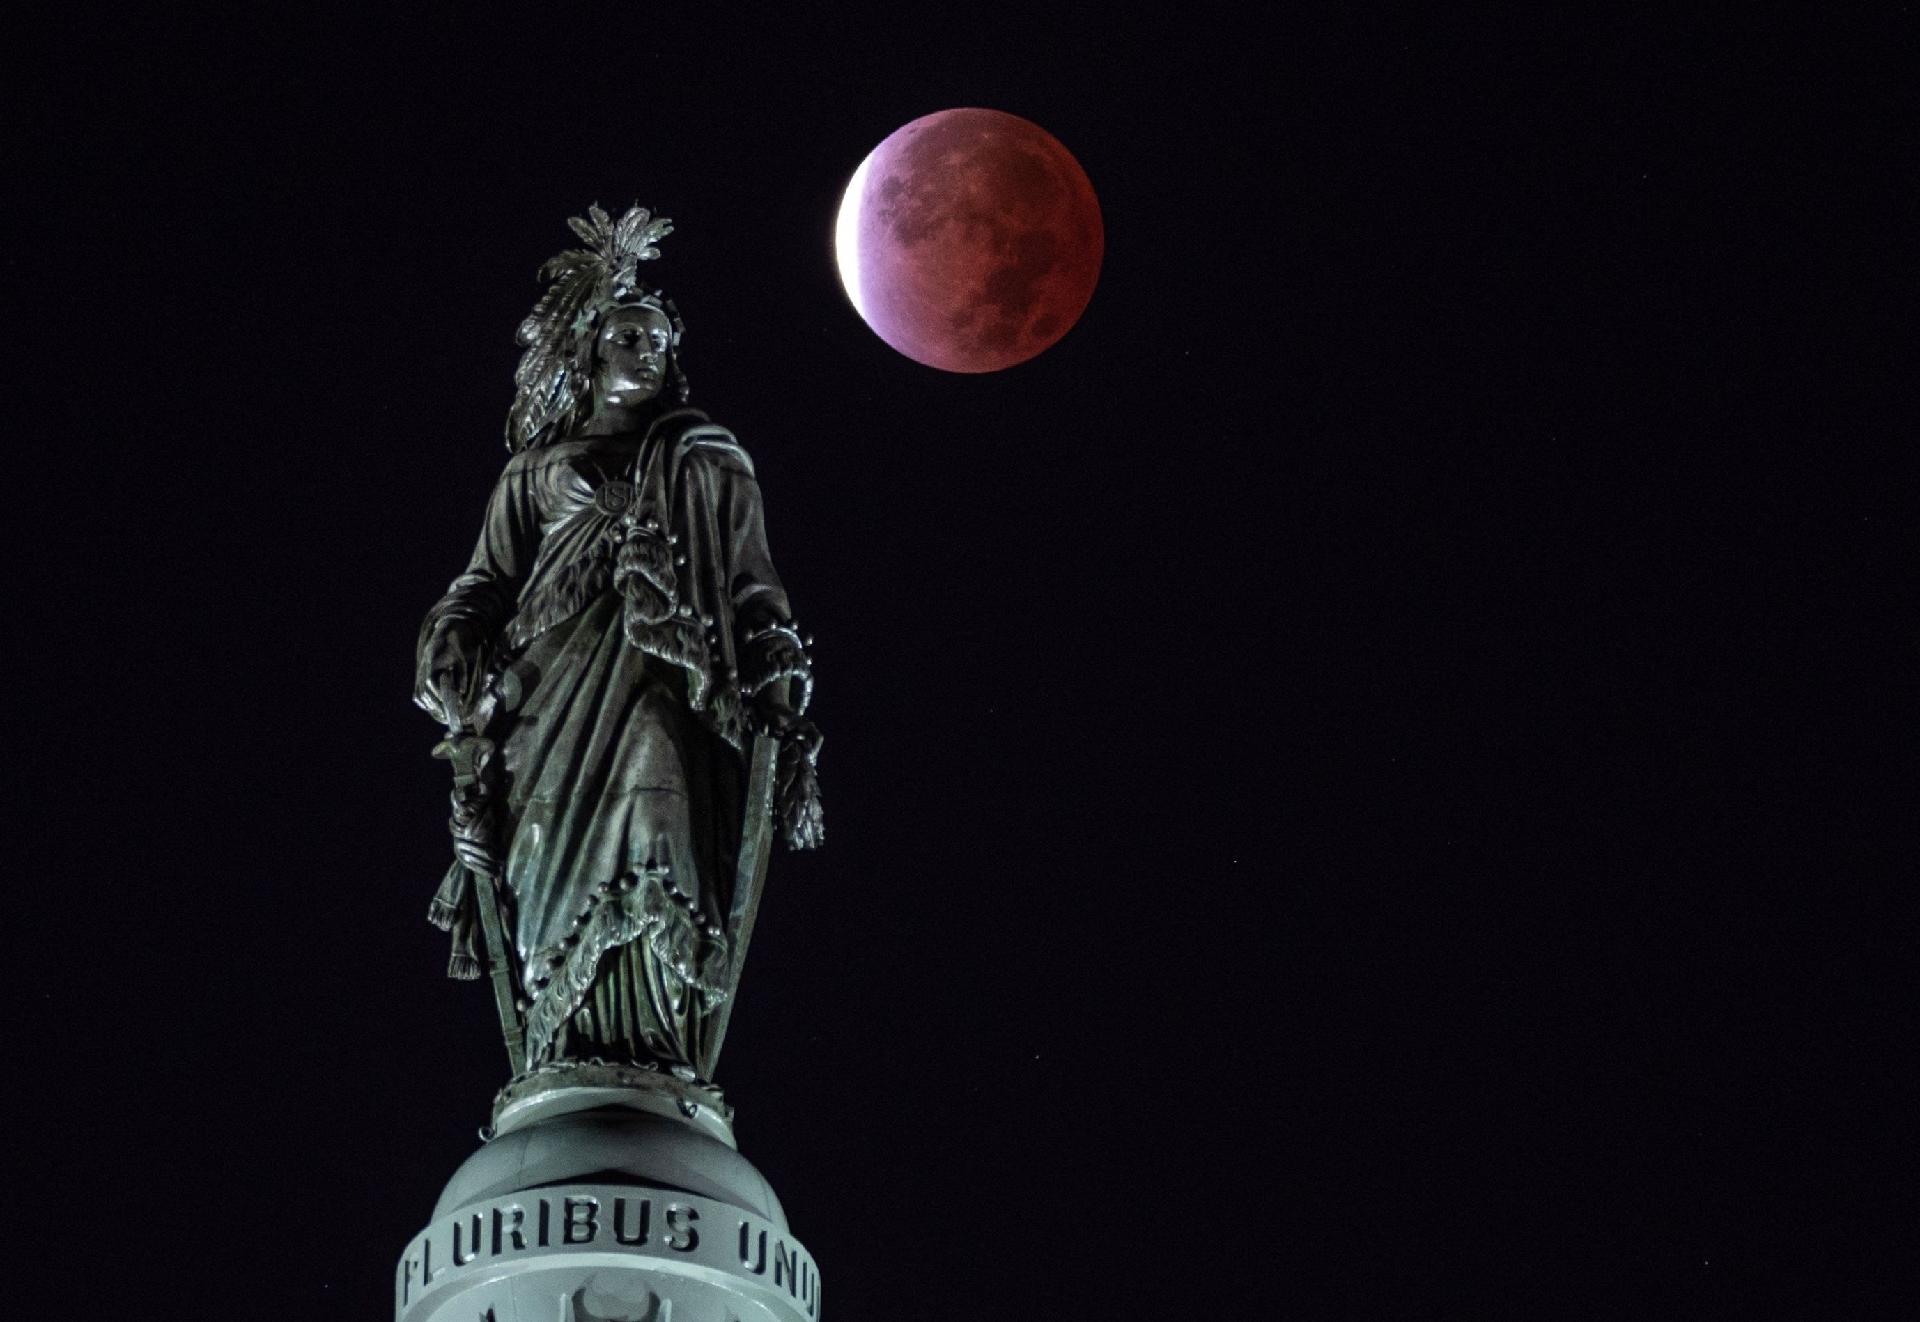 La luna, con un eclipse lunar parcial, detrás de la Estatua de la Libertad en Washington, DC (EE. UU.) - Andrew Caballero / AFP